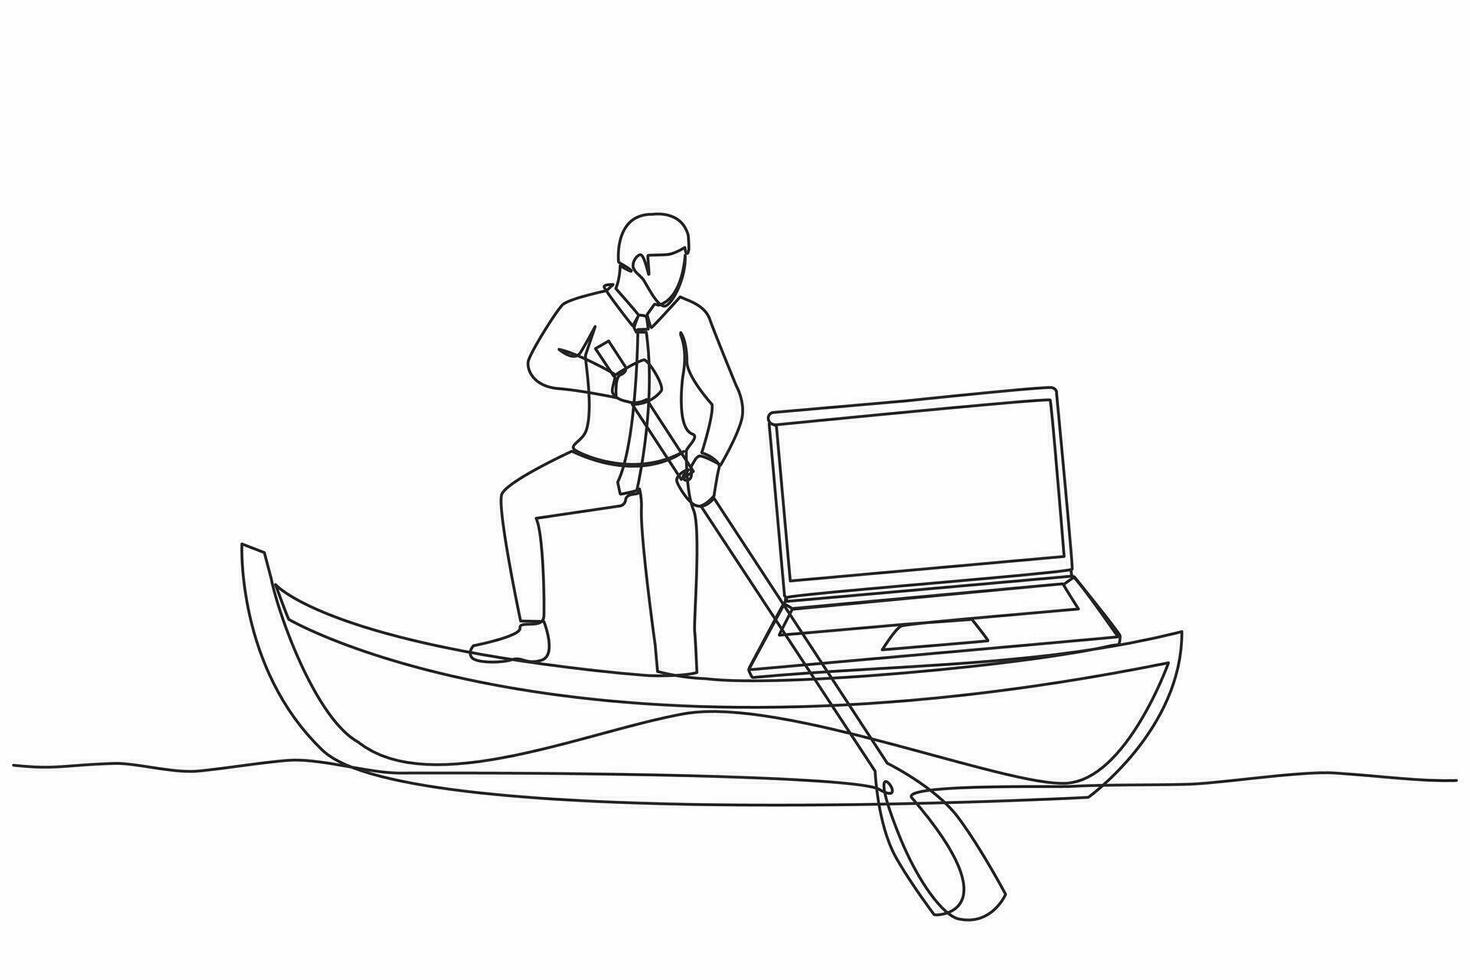 Single kontinuierlich Linie Zeichnung Geschäftsmann Stehen im Boot und Segeln mit Laptop Computer. glücklich Arbeiter wie ein Freiberufler oder kreativ Manager. Fernbedienung arbeiten. einer Linie Grafik Design Vektor Illustration